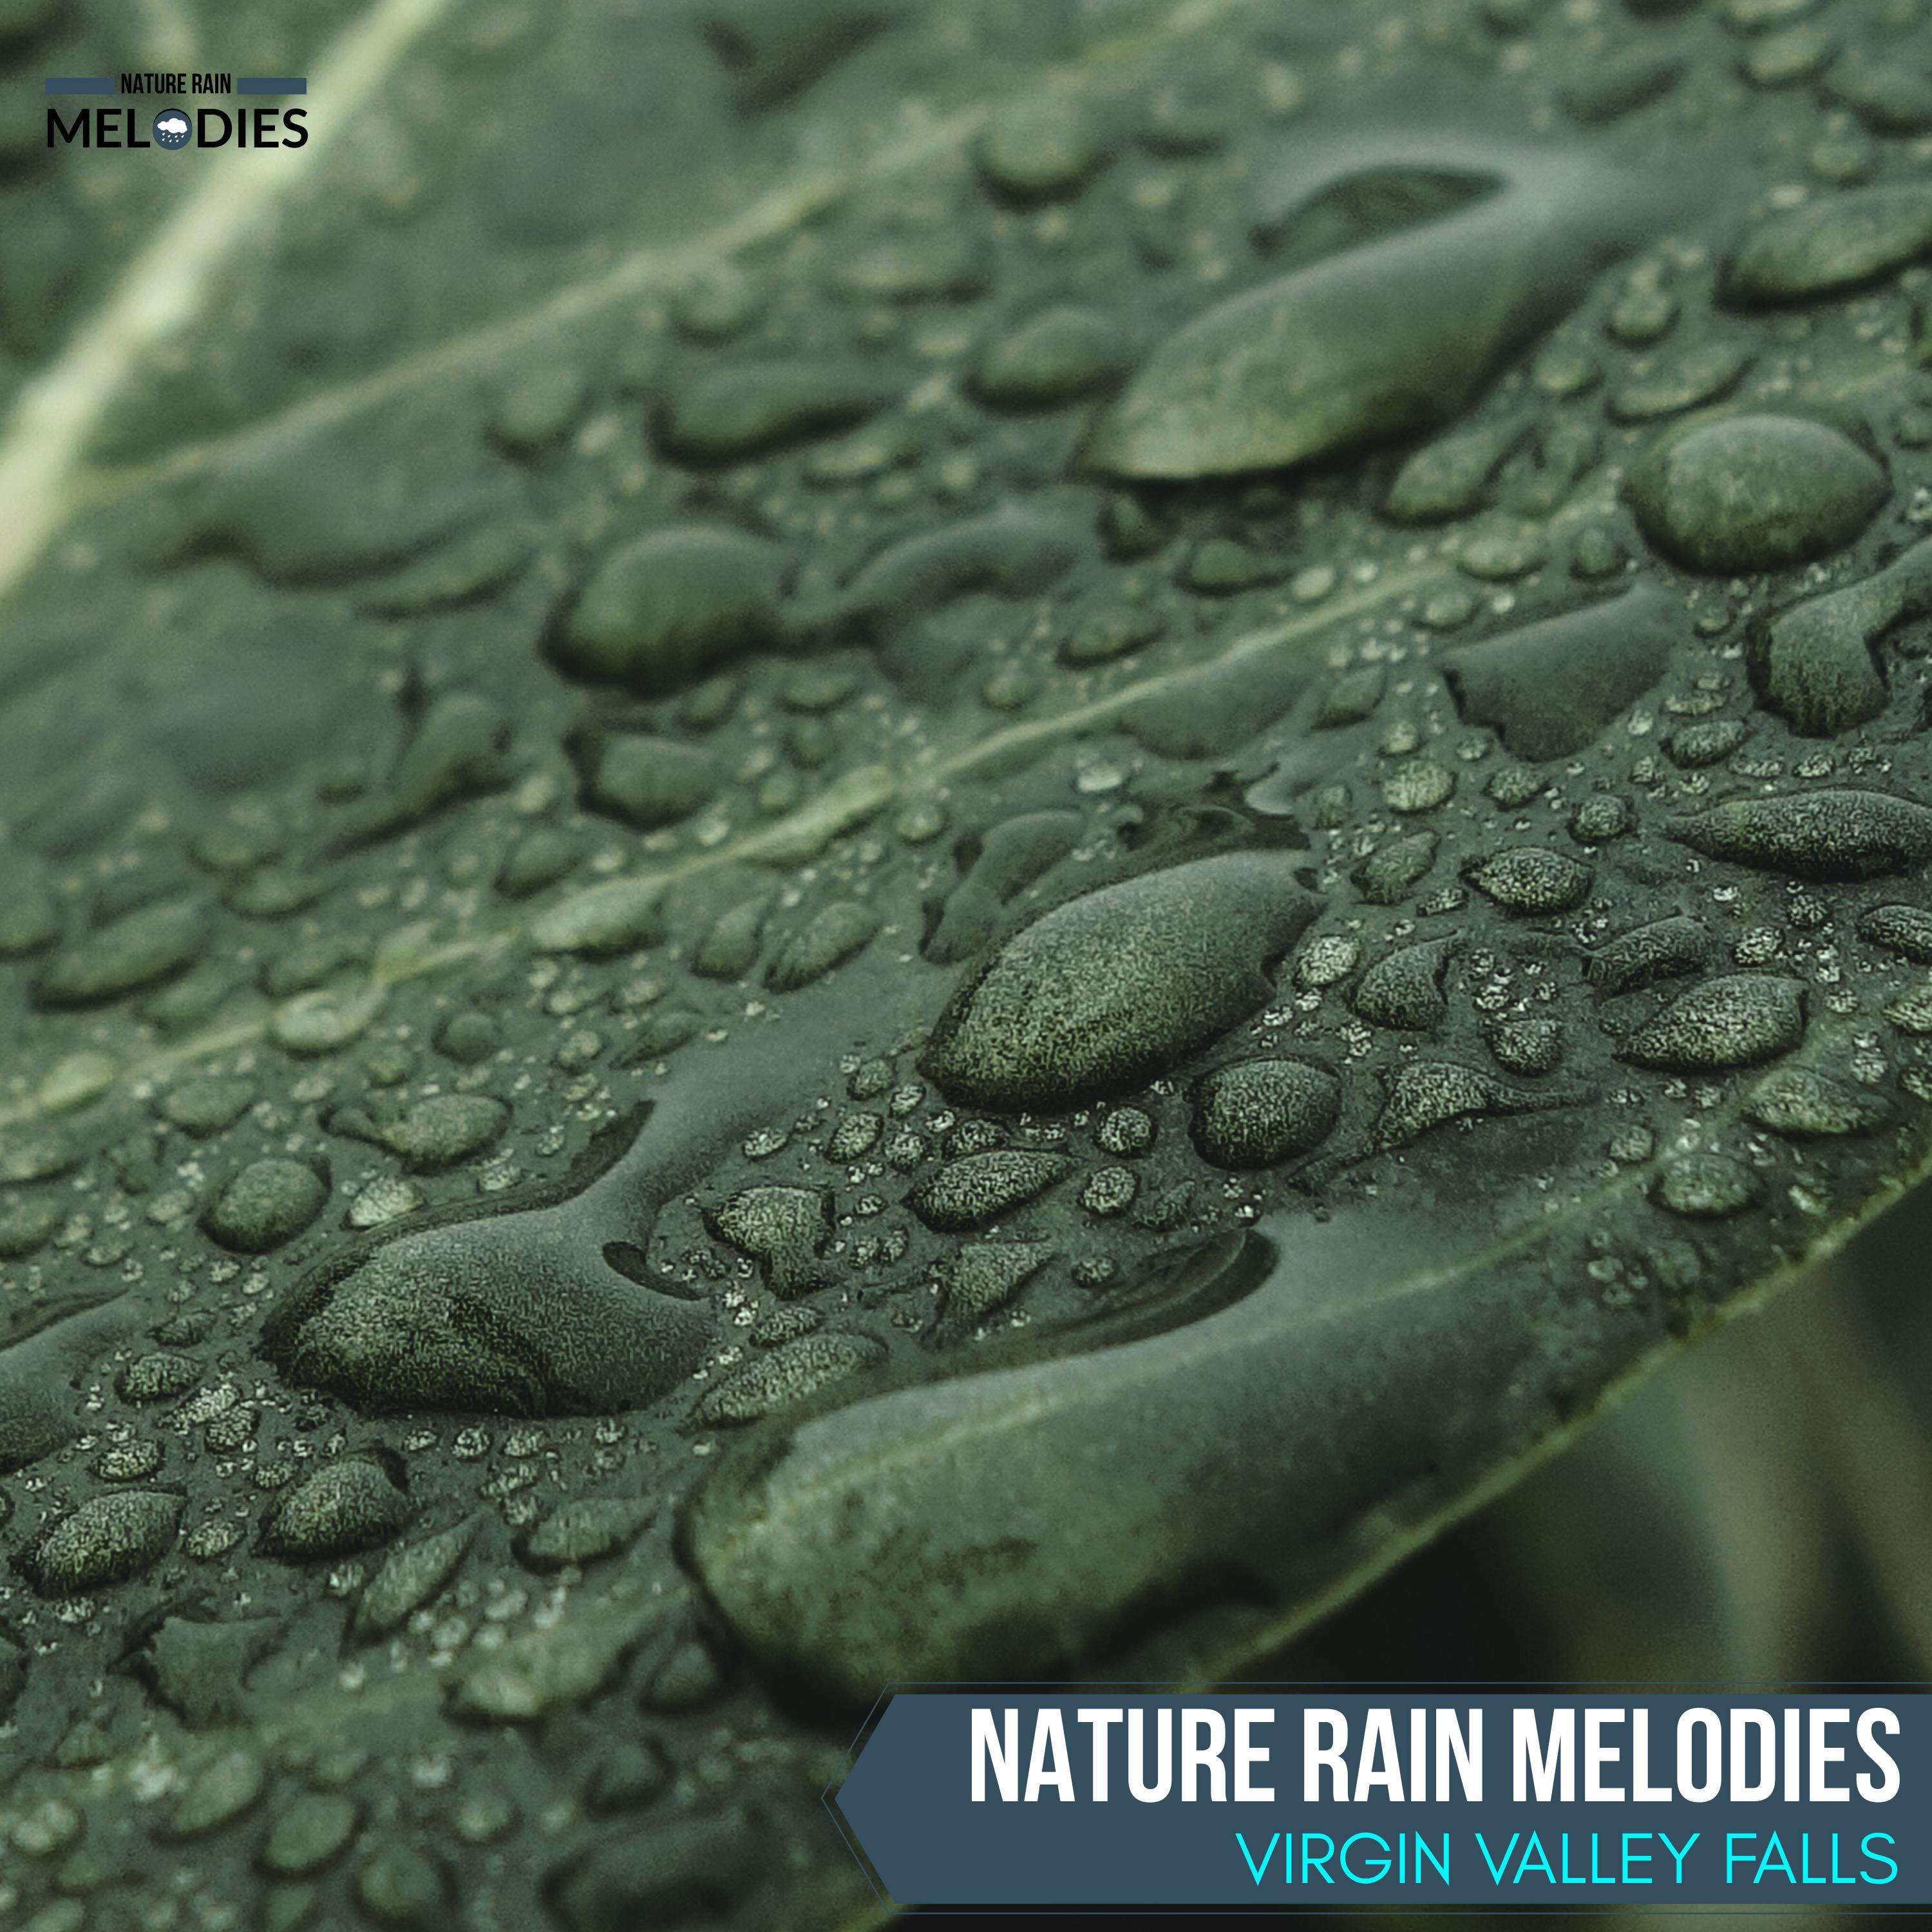 Organic Drop Nature Sounds - Pattering Rain Heavy Downpour